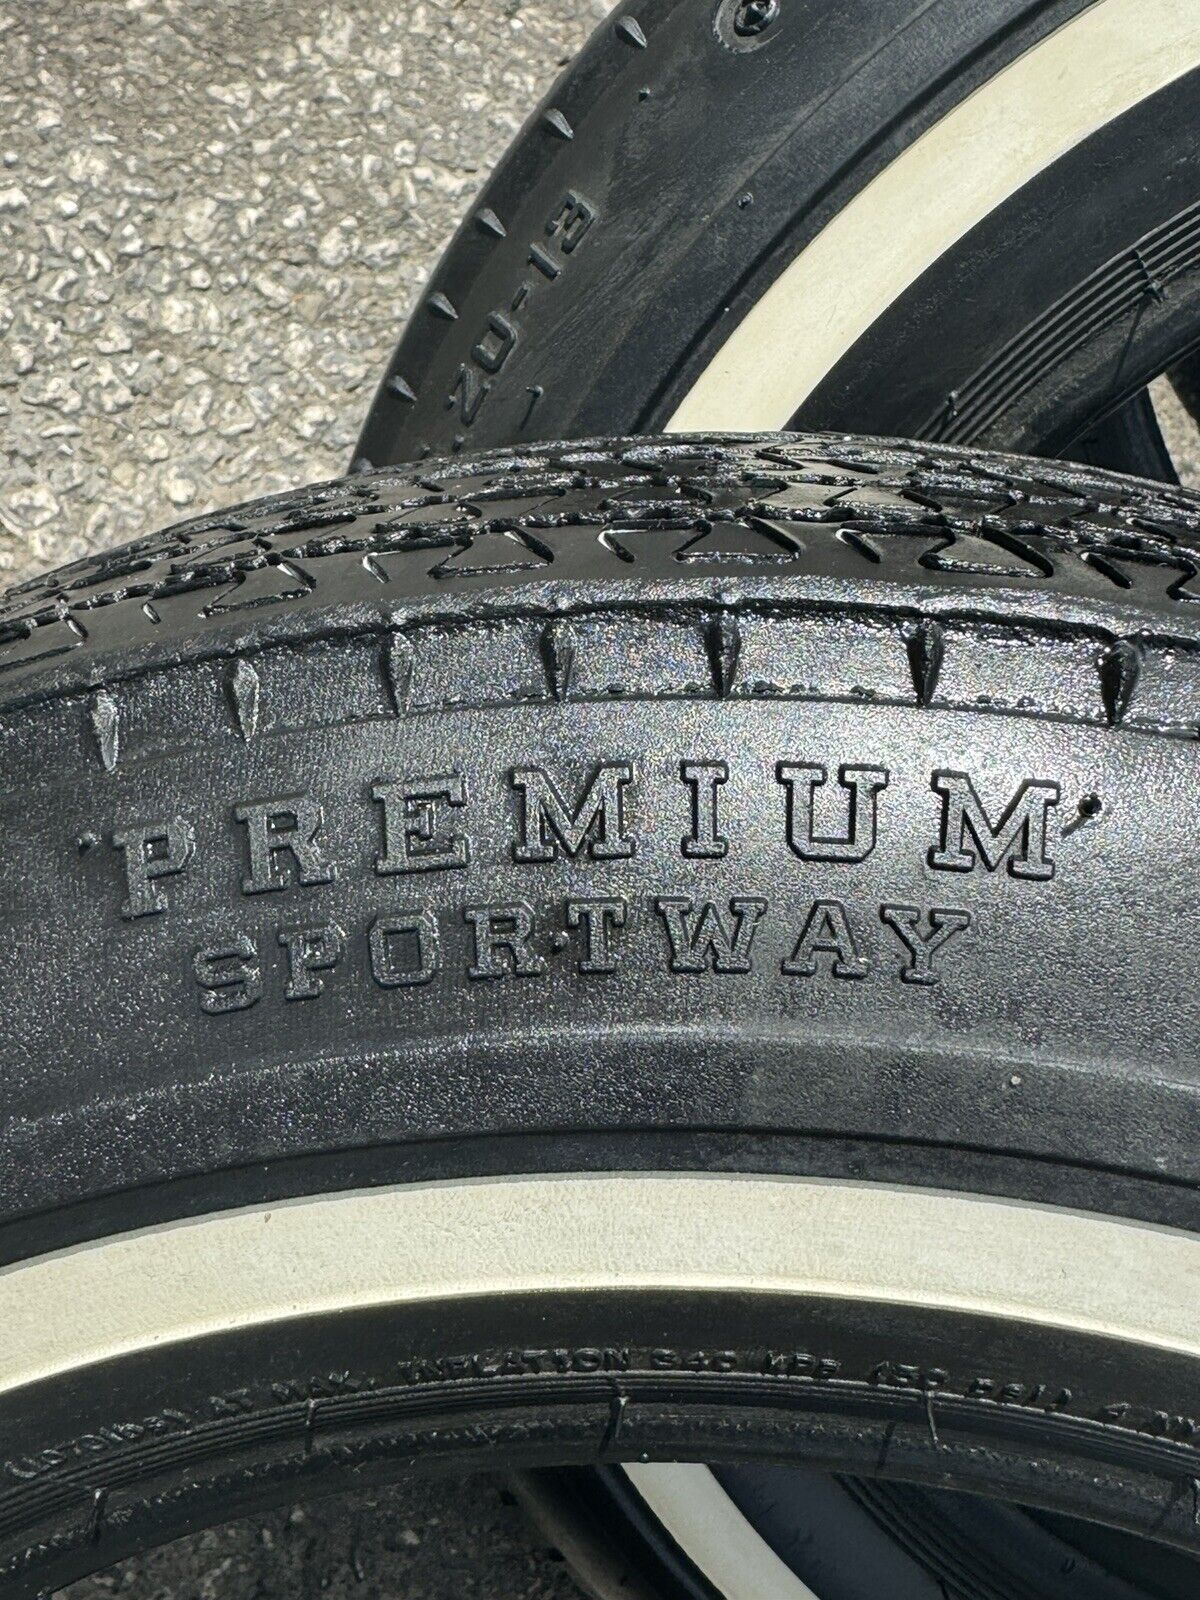 520 Premium Sportway Tires